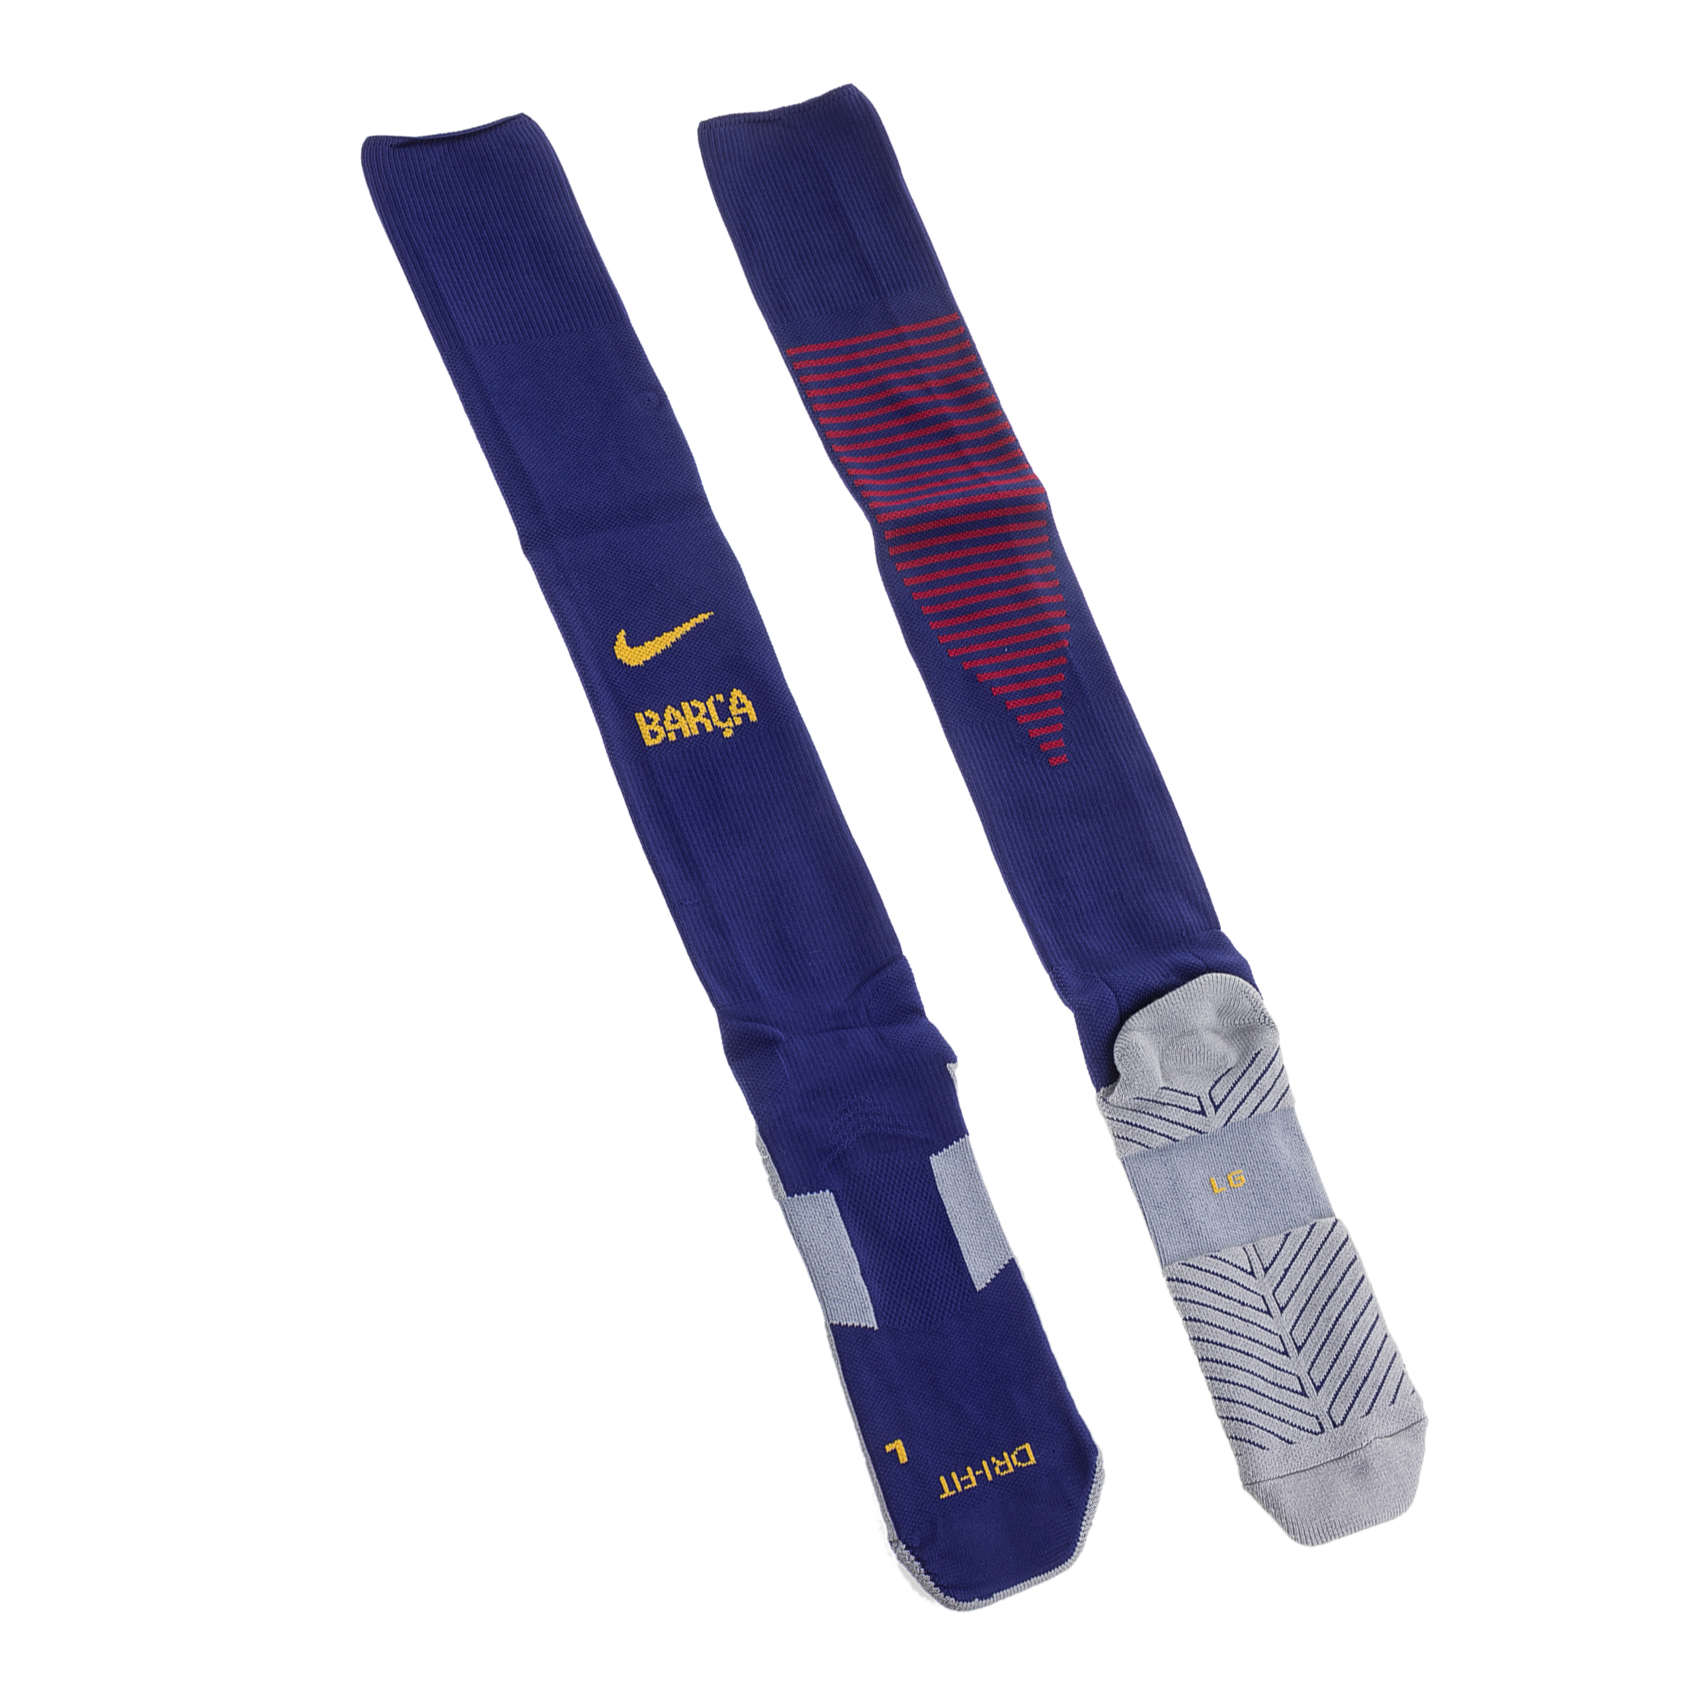 Ανδρικά/Αξεσουάρ/Κάλτσες NIKE - Unisex κάλτσες Nike BARCELONA μπλε